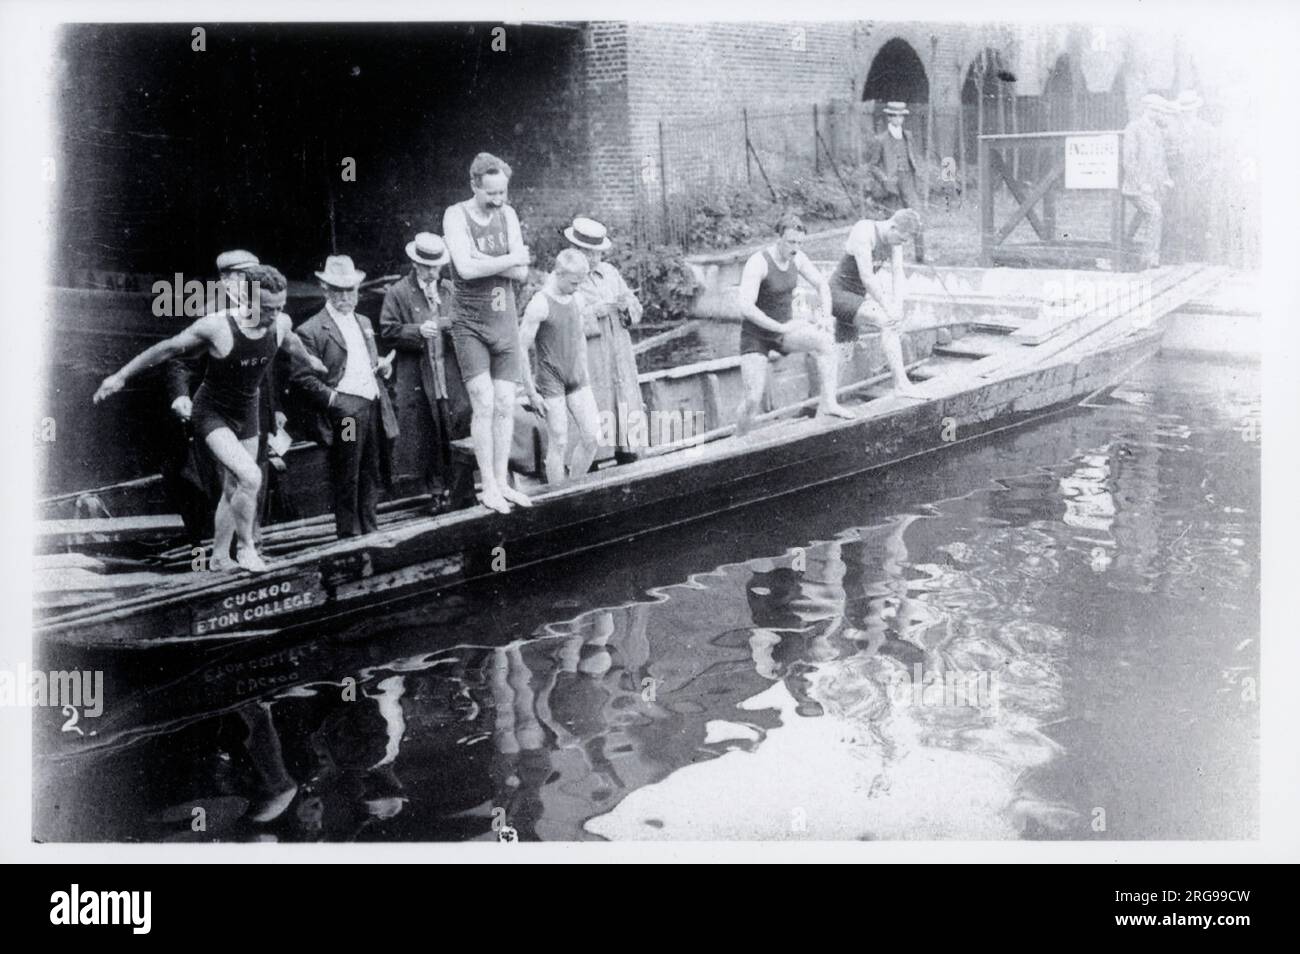 Mitglieder des W. S. C. (Windsor Swimming Club), die sich den Eton College Punt „Cuckoo“ als Startlinie für ein Rennen auf der Themse ausgeliehen haben. Der Kurs verlief von der Great Western Railway (GWR) Bridge zu den WSC Swimming Baths (eine Entfernung von ca. 400 Yards). Stockfoto